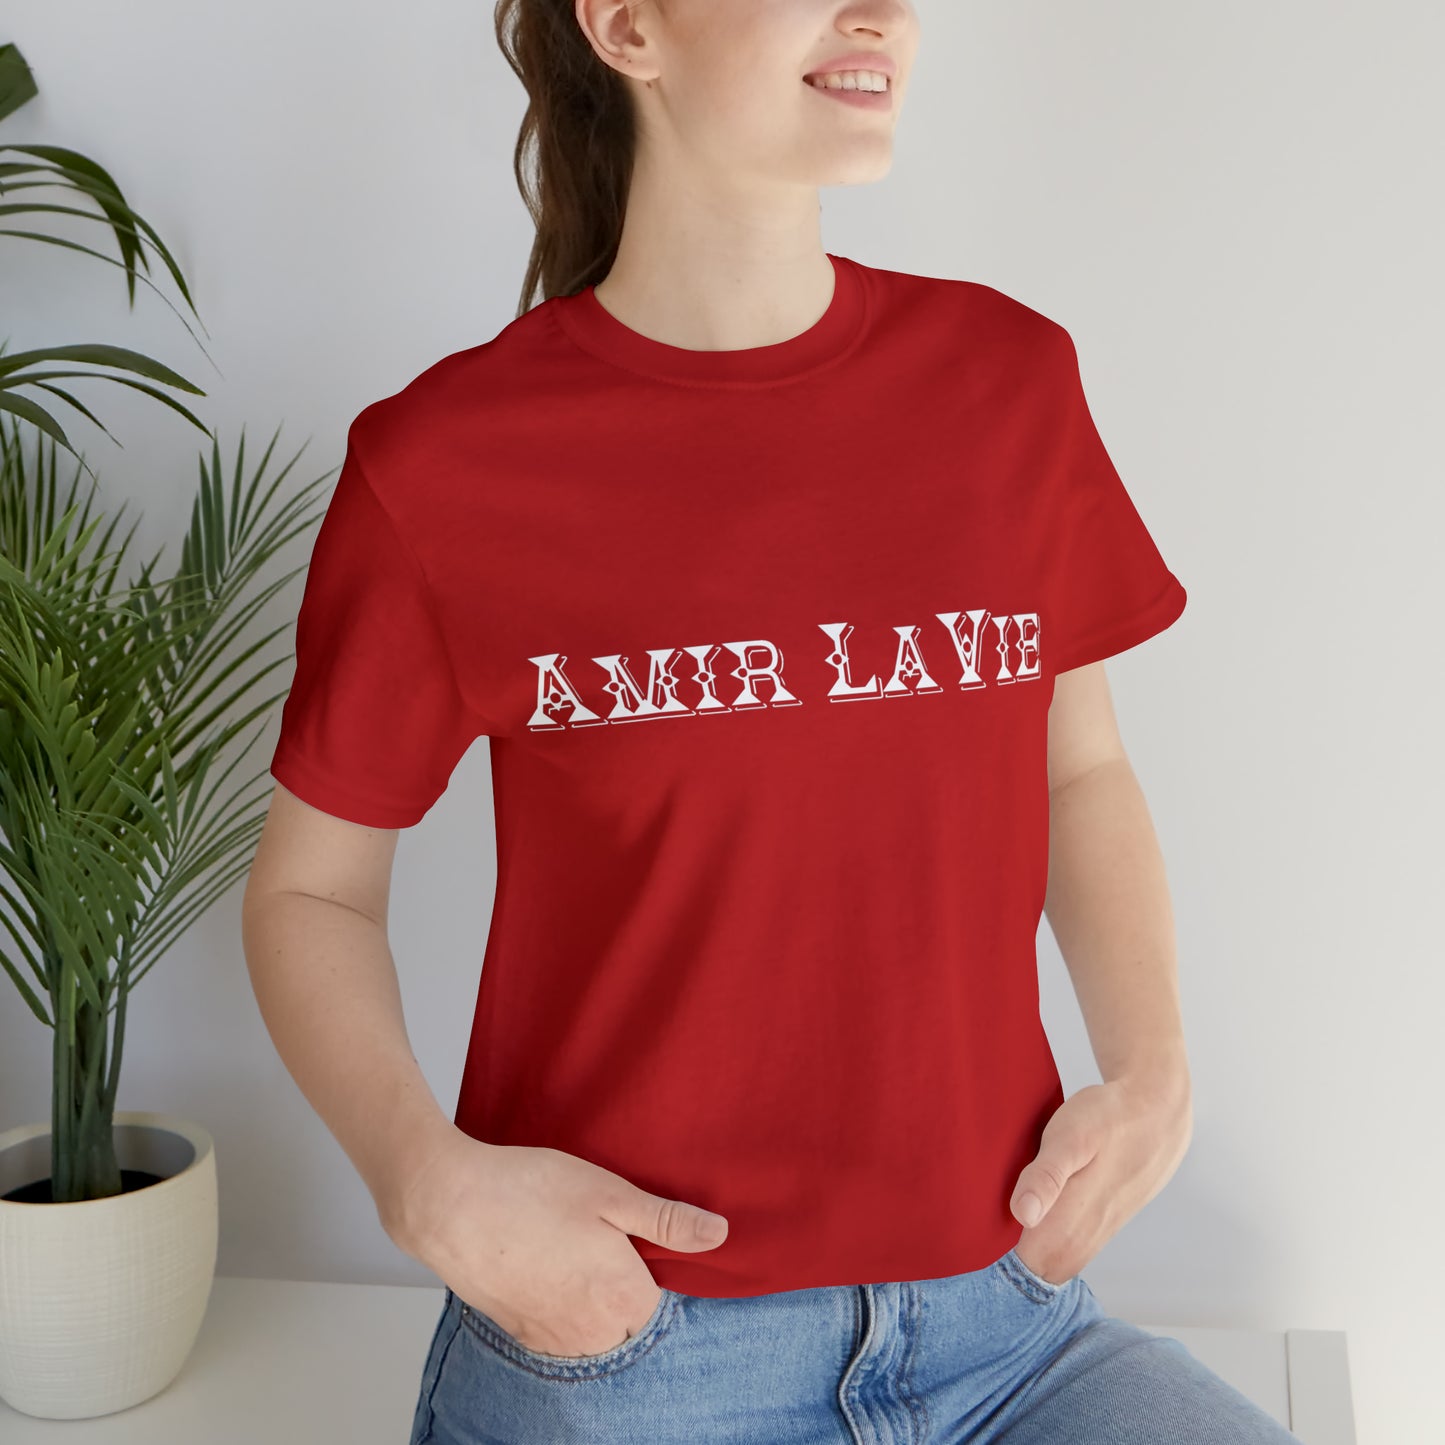 Amir LaVie - Jersey Short Sleeve Tee